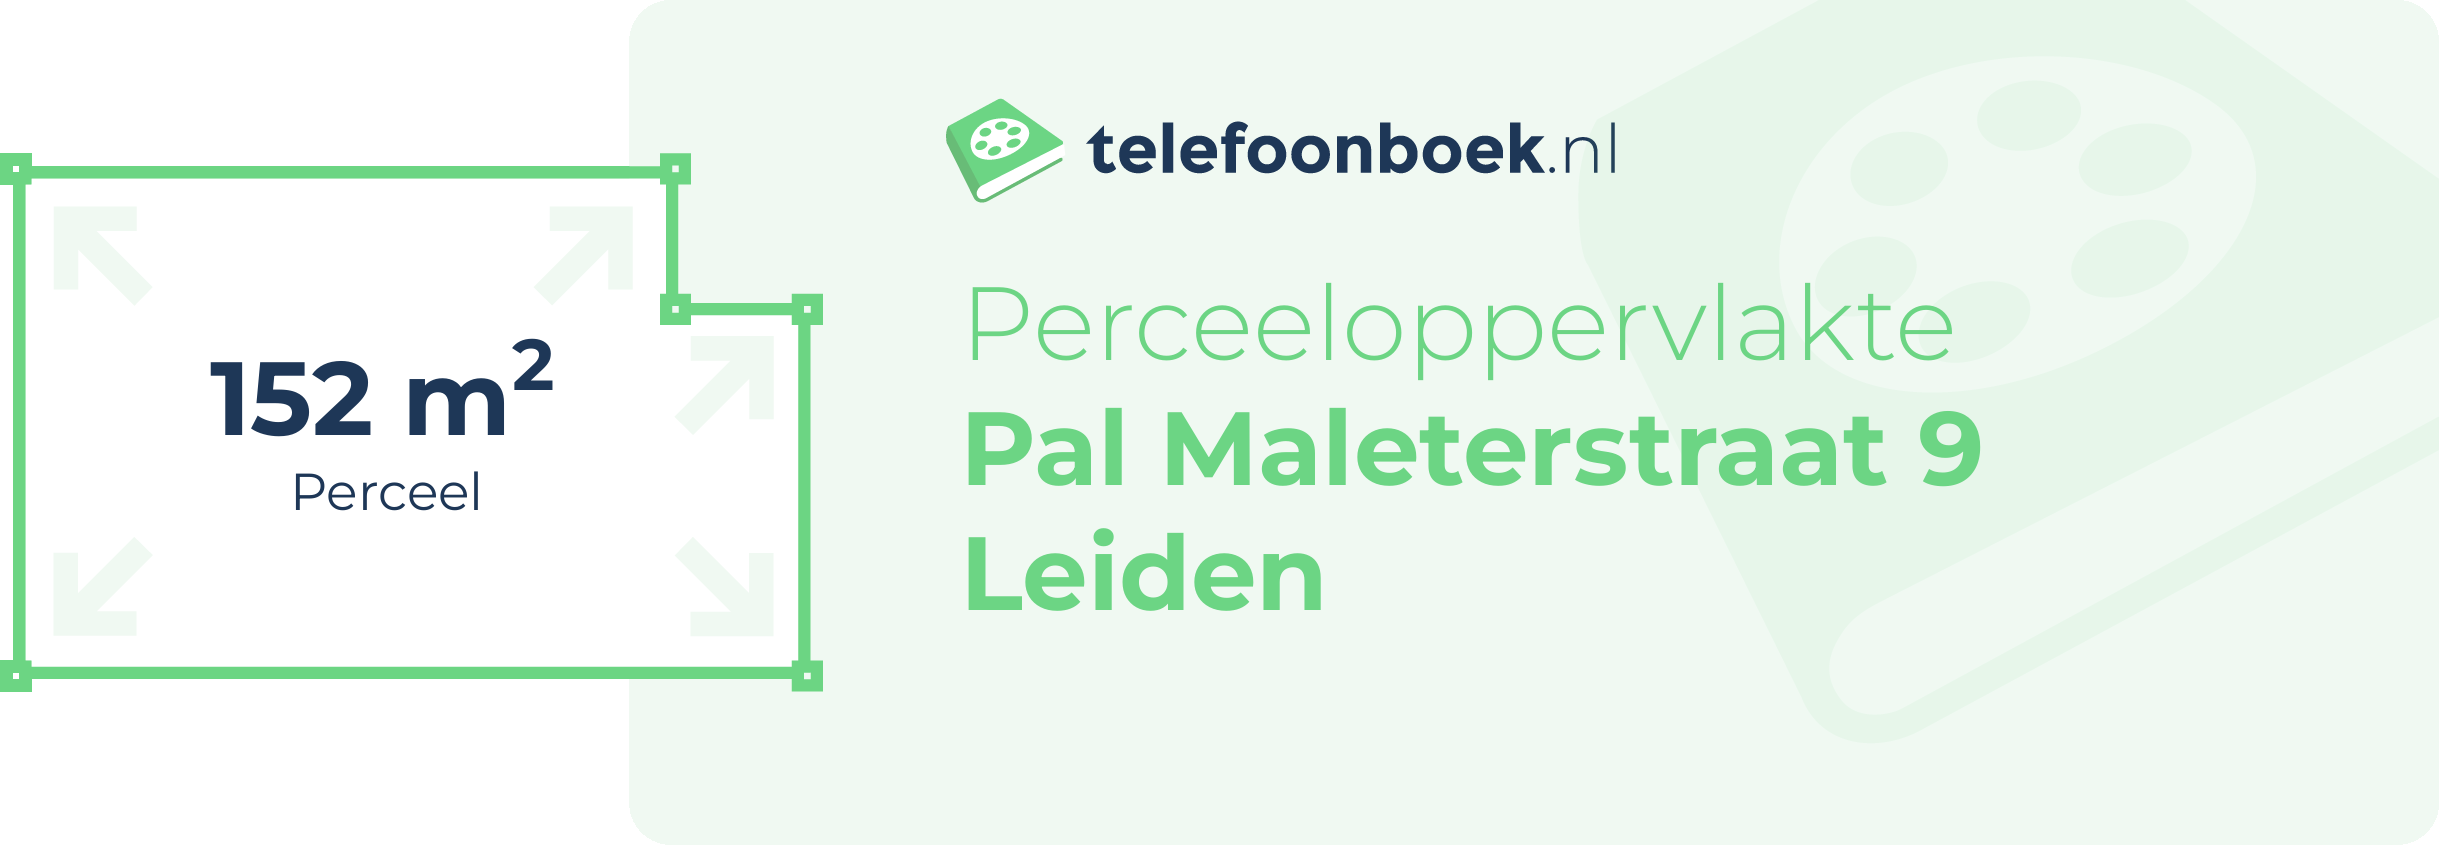 Perceeloppervlakte Pal Maleterstraat 9 Leiden